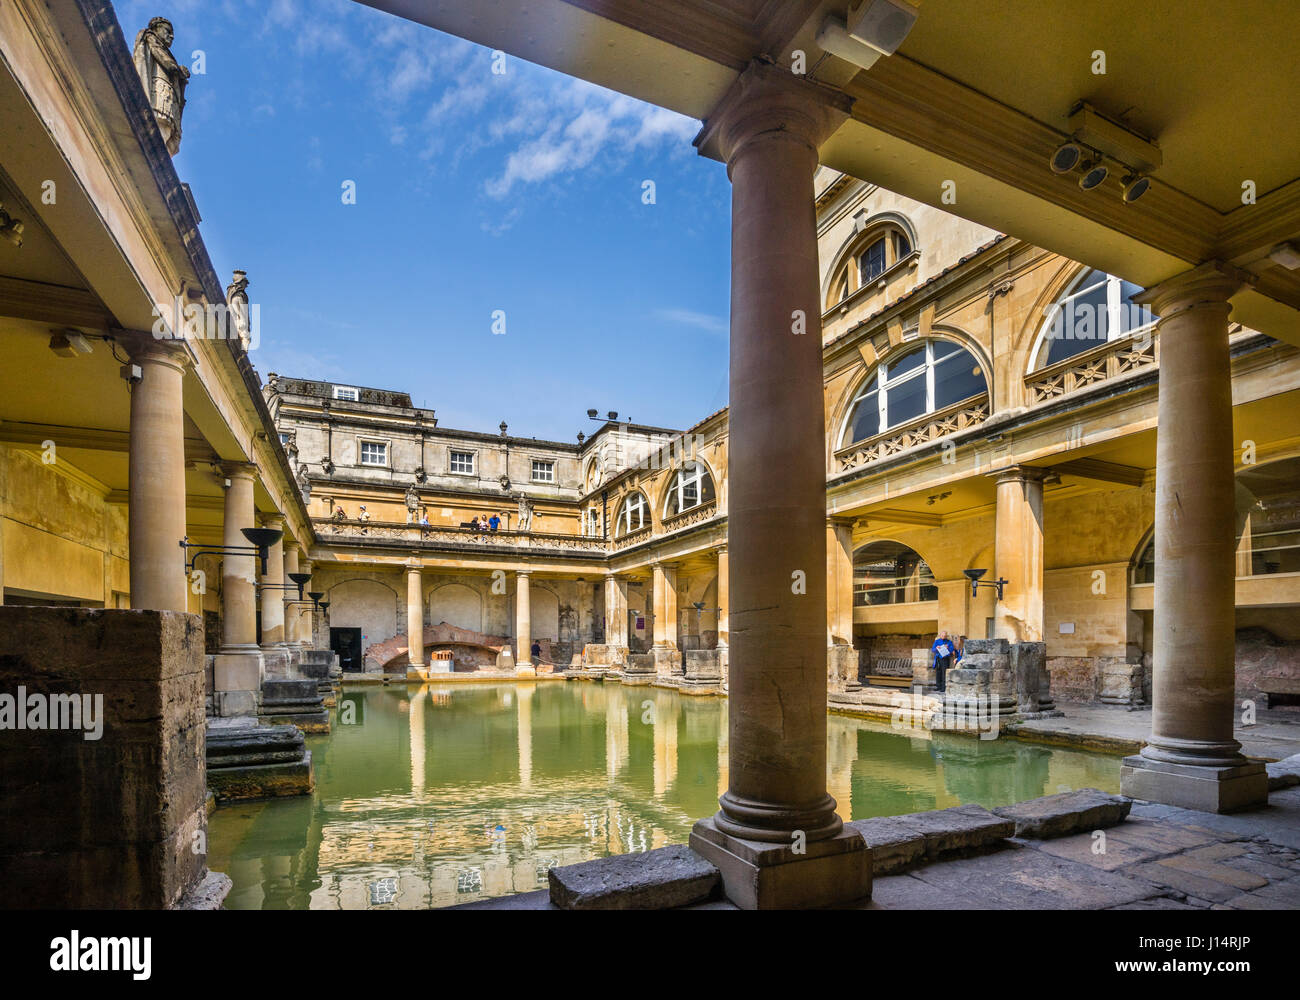 Royaume-uni, Angleterre, Somerset, les bains romains de Bath avec superstructure victorienne Banque D'Images